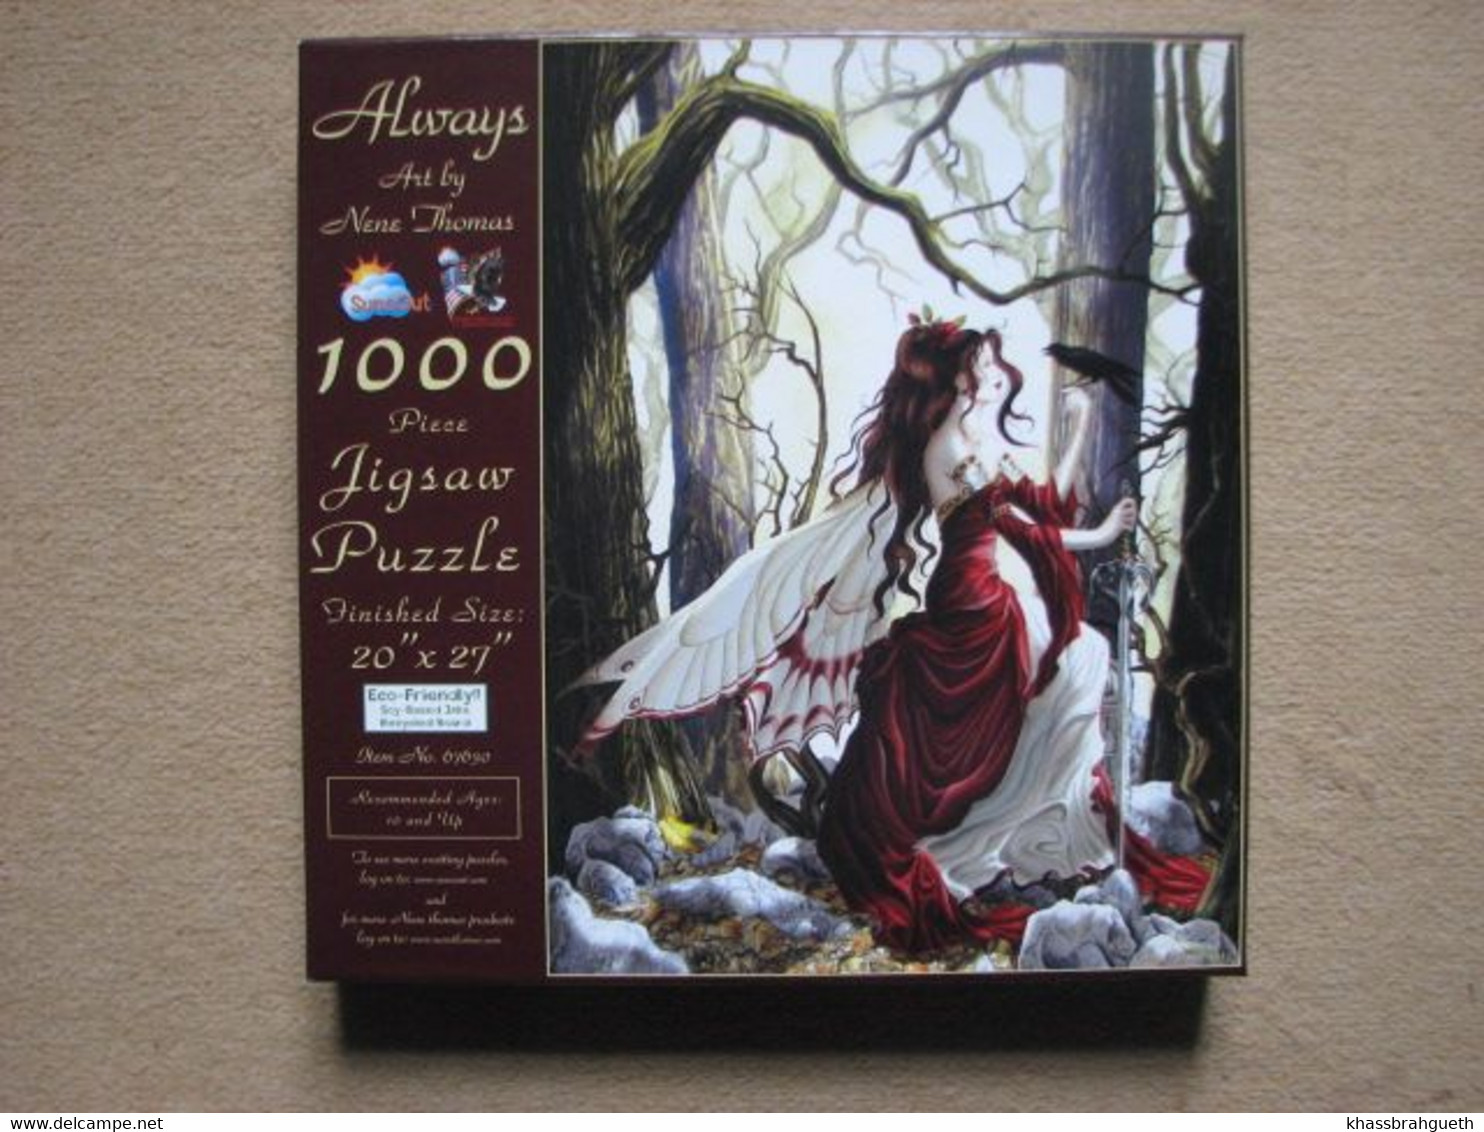 PUZZLE SUNSOUT (1000 P) - ART BY NENE THOMAS "ALWAYS" - Puzzle Games